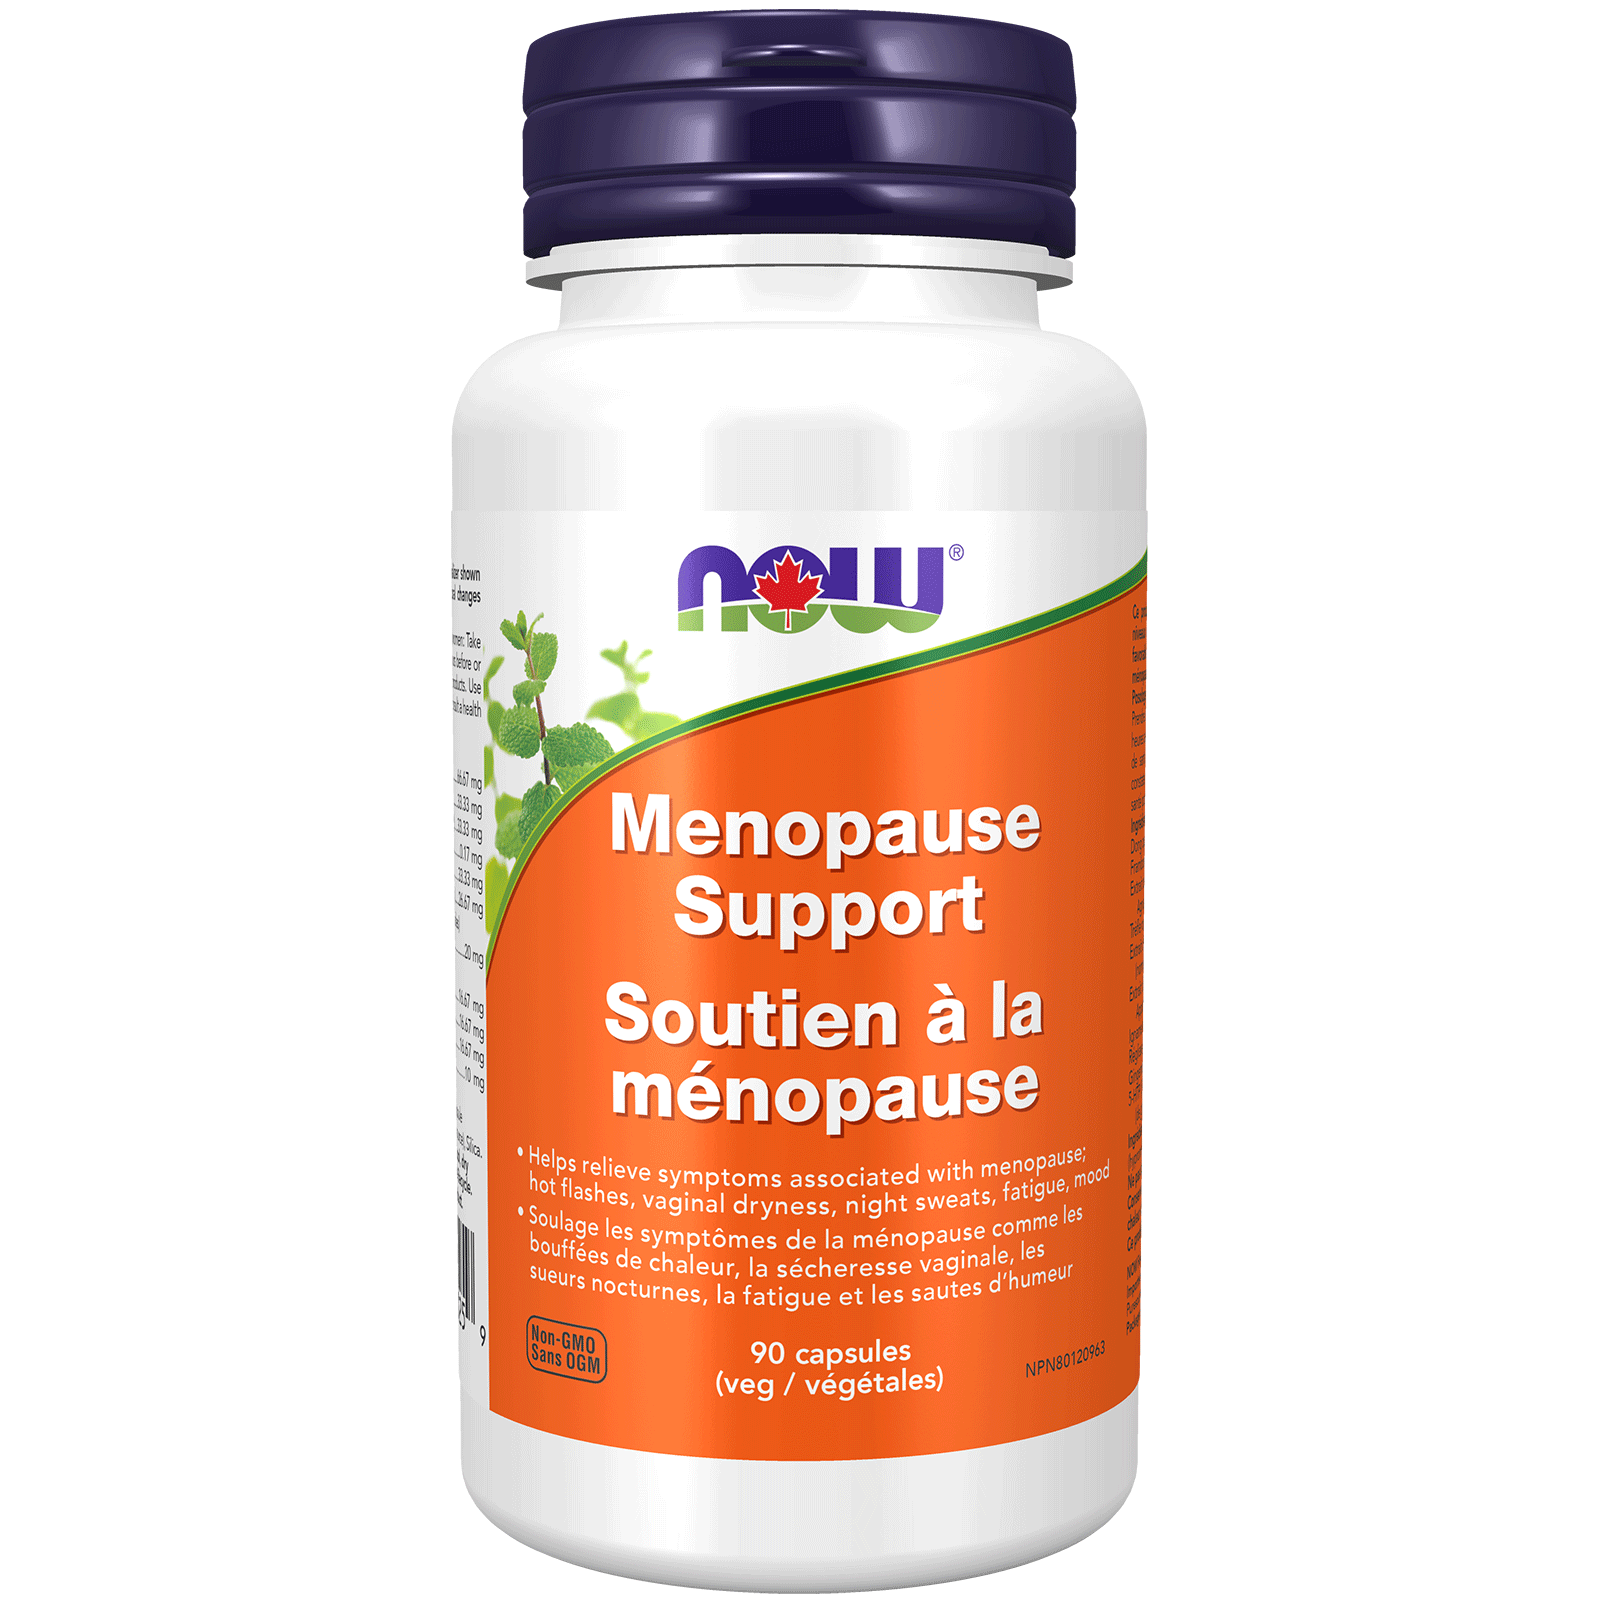 Menopause Support Veg Capsules (90 Capsules) - Now Foods Canada